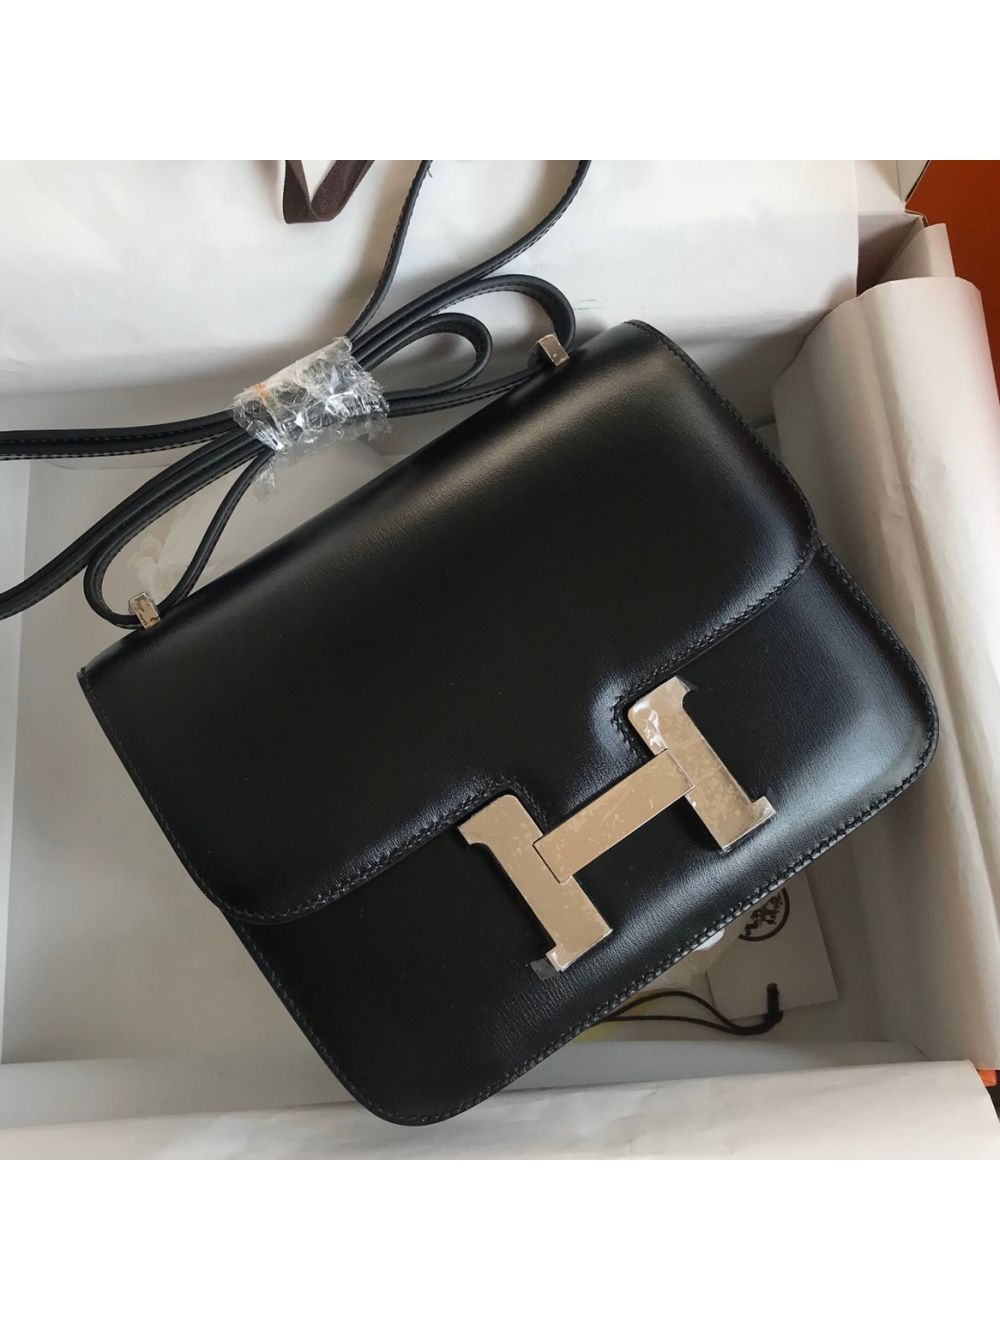 Replica Hermes Constance 18 Handmade Bag In Black Epsom Calfskin